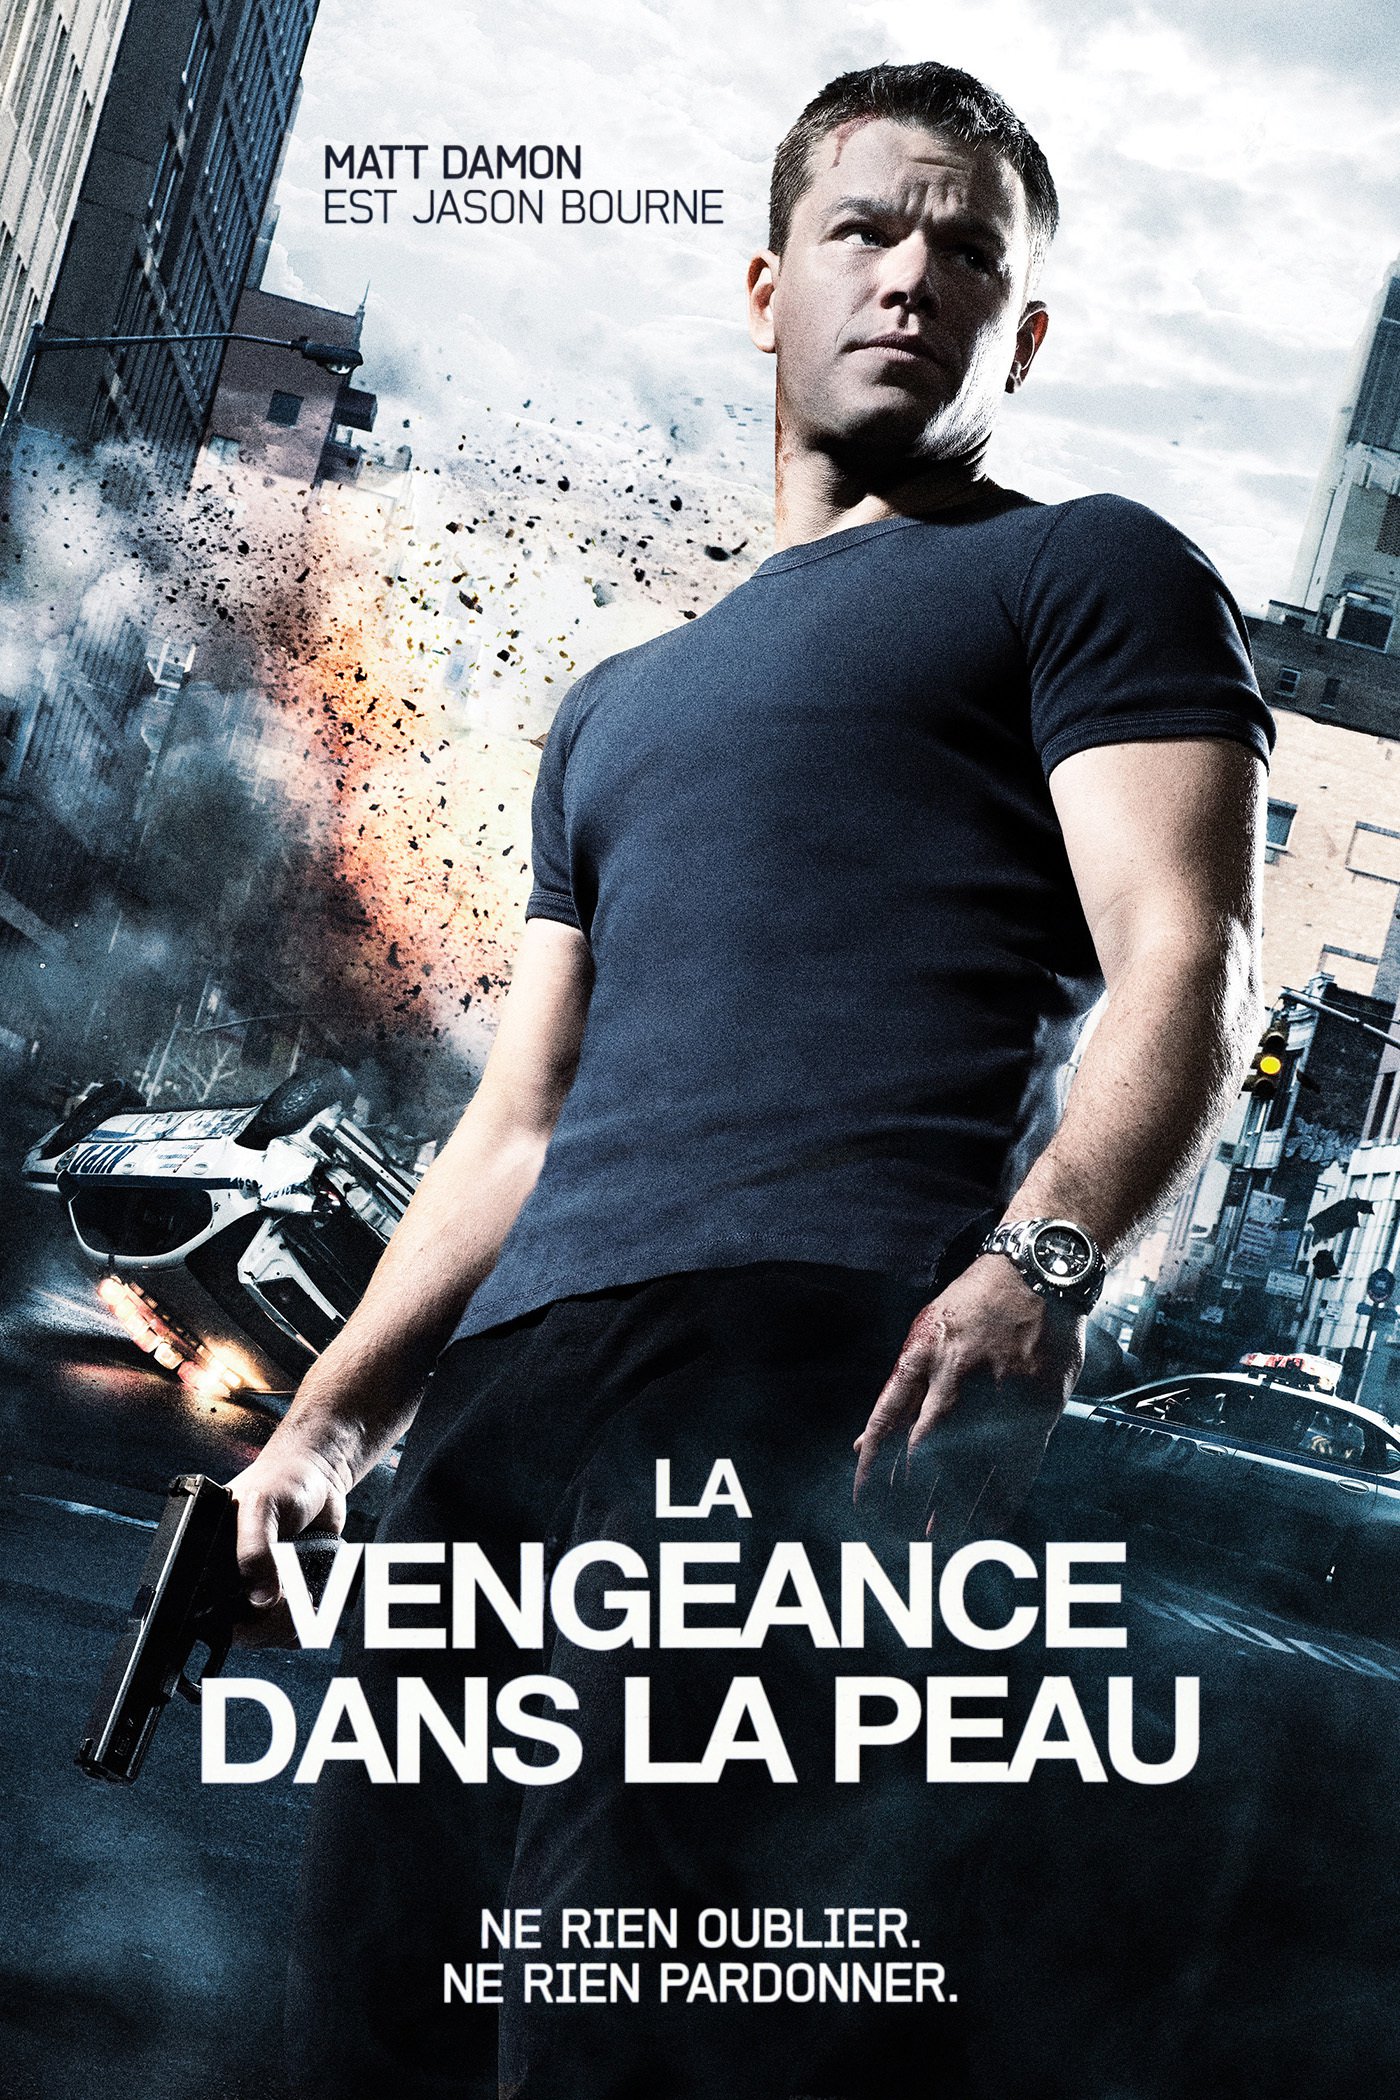 La Vengeance dans la peau (Film, 2007) — CinéSérie